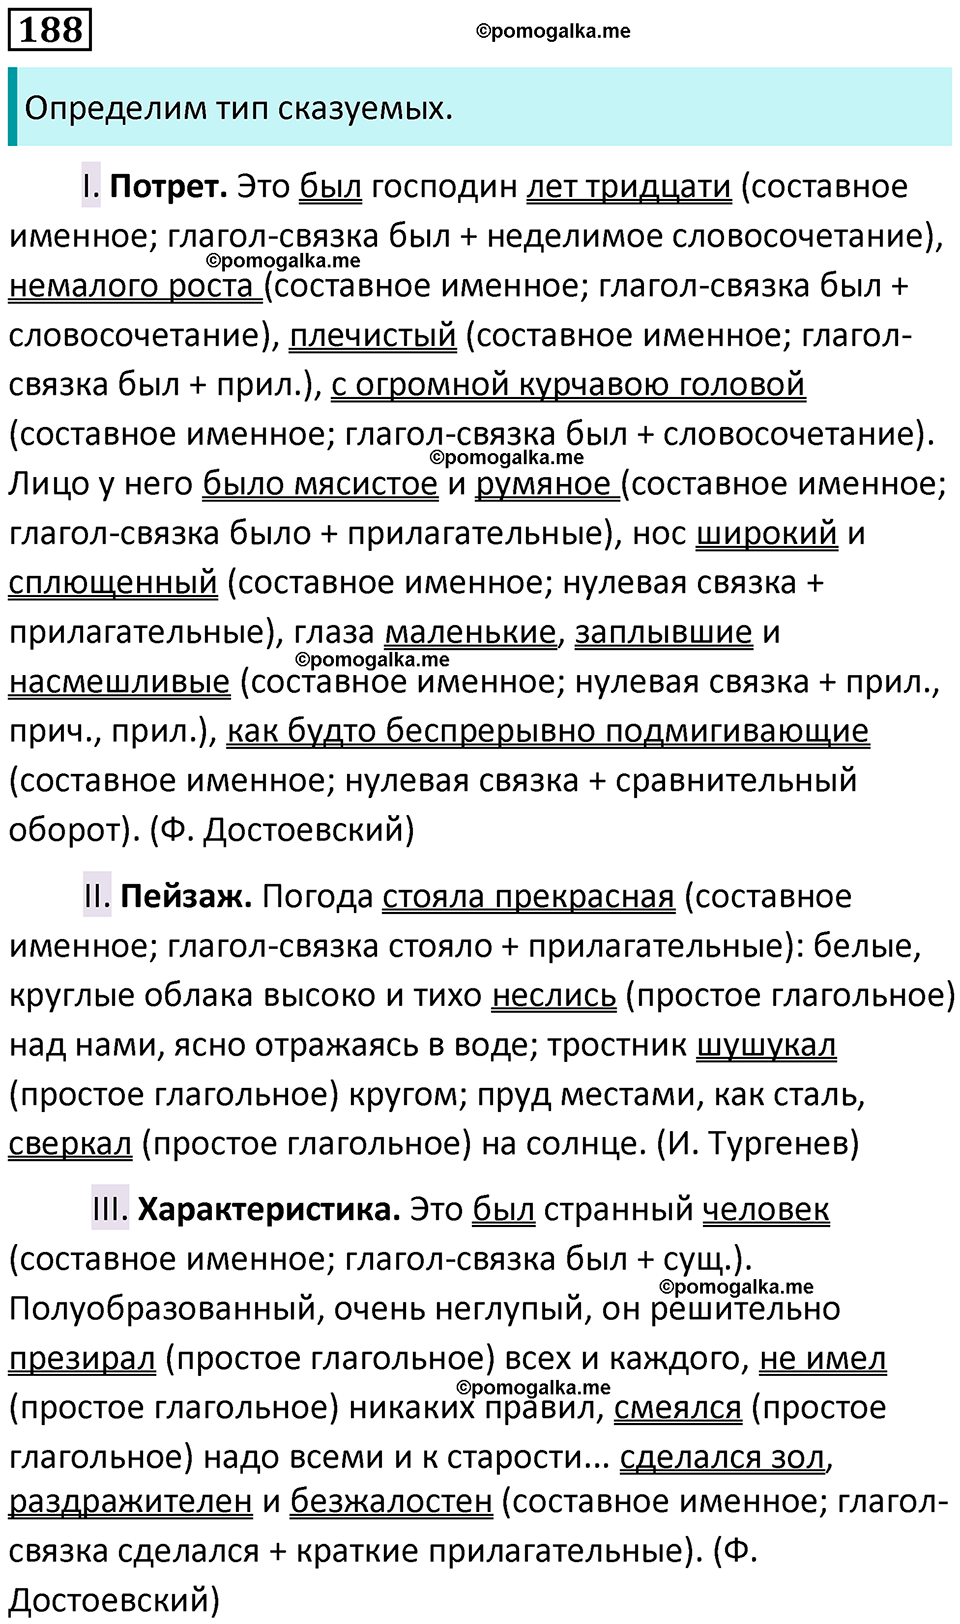 разбор упражнения №188 русский язык 8 класс Бархударов 2023 год